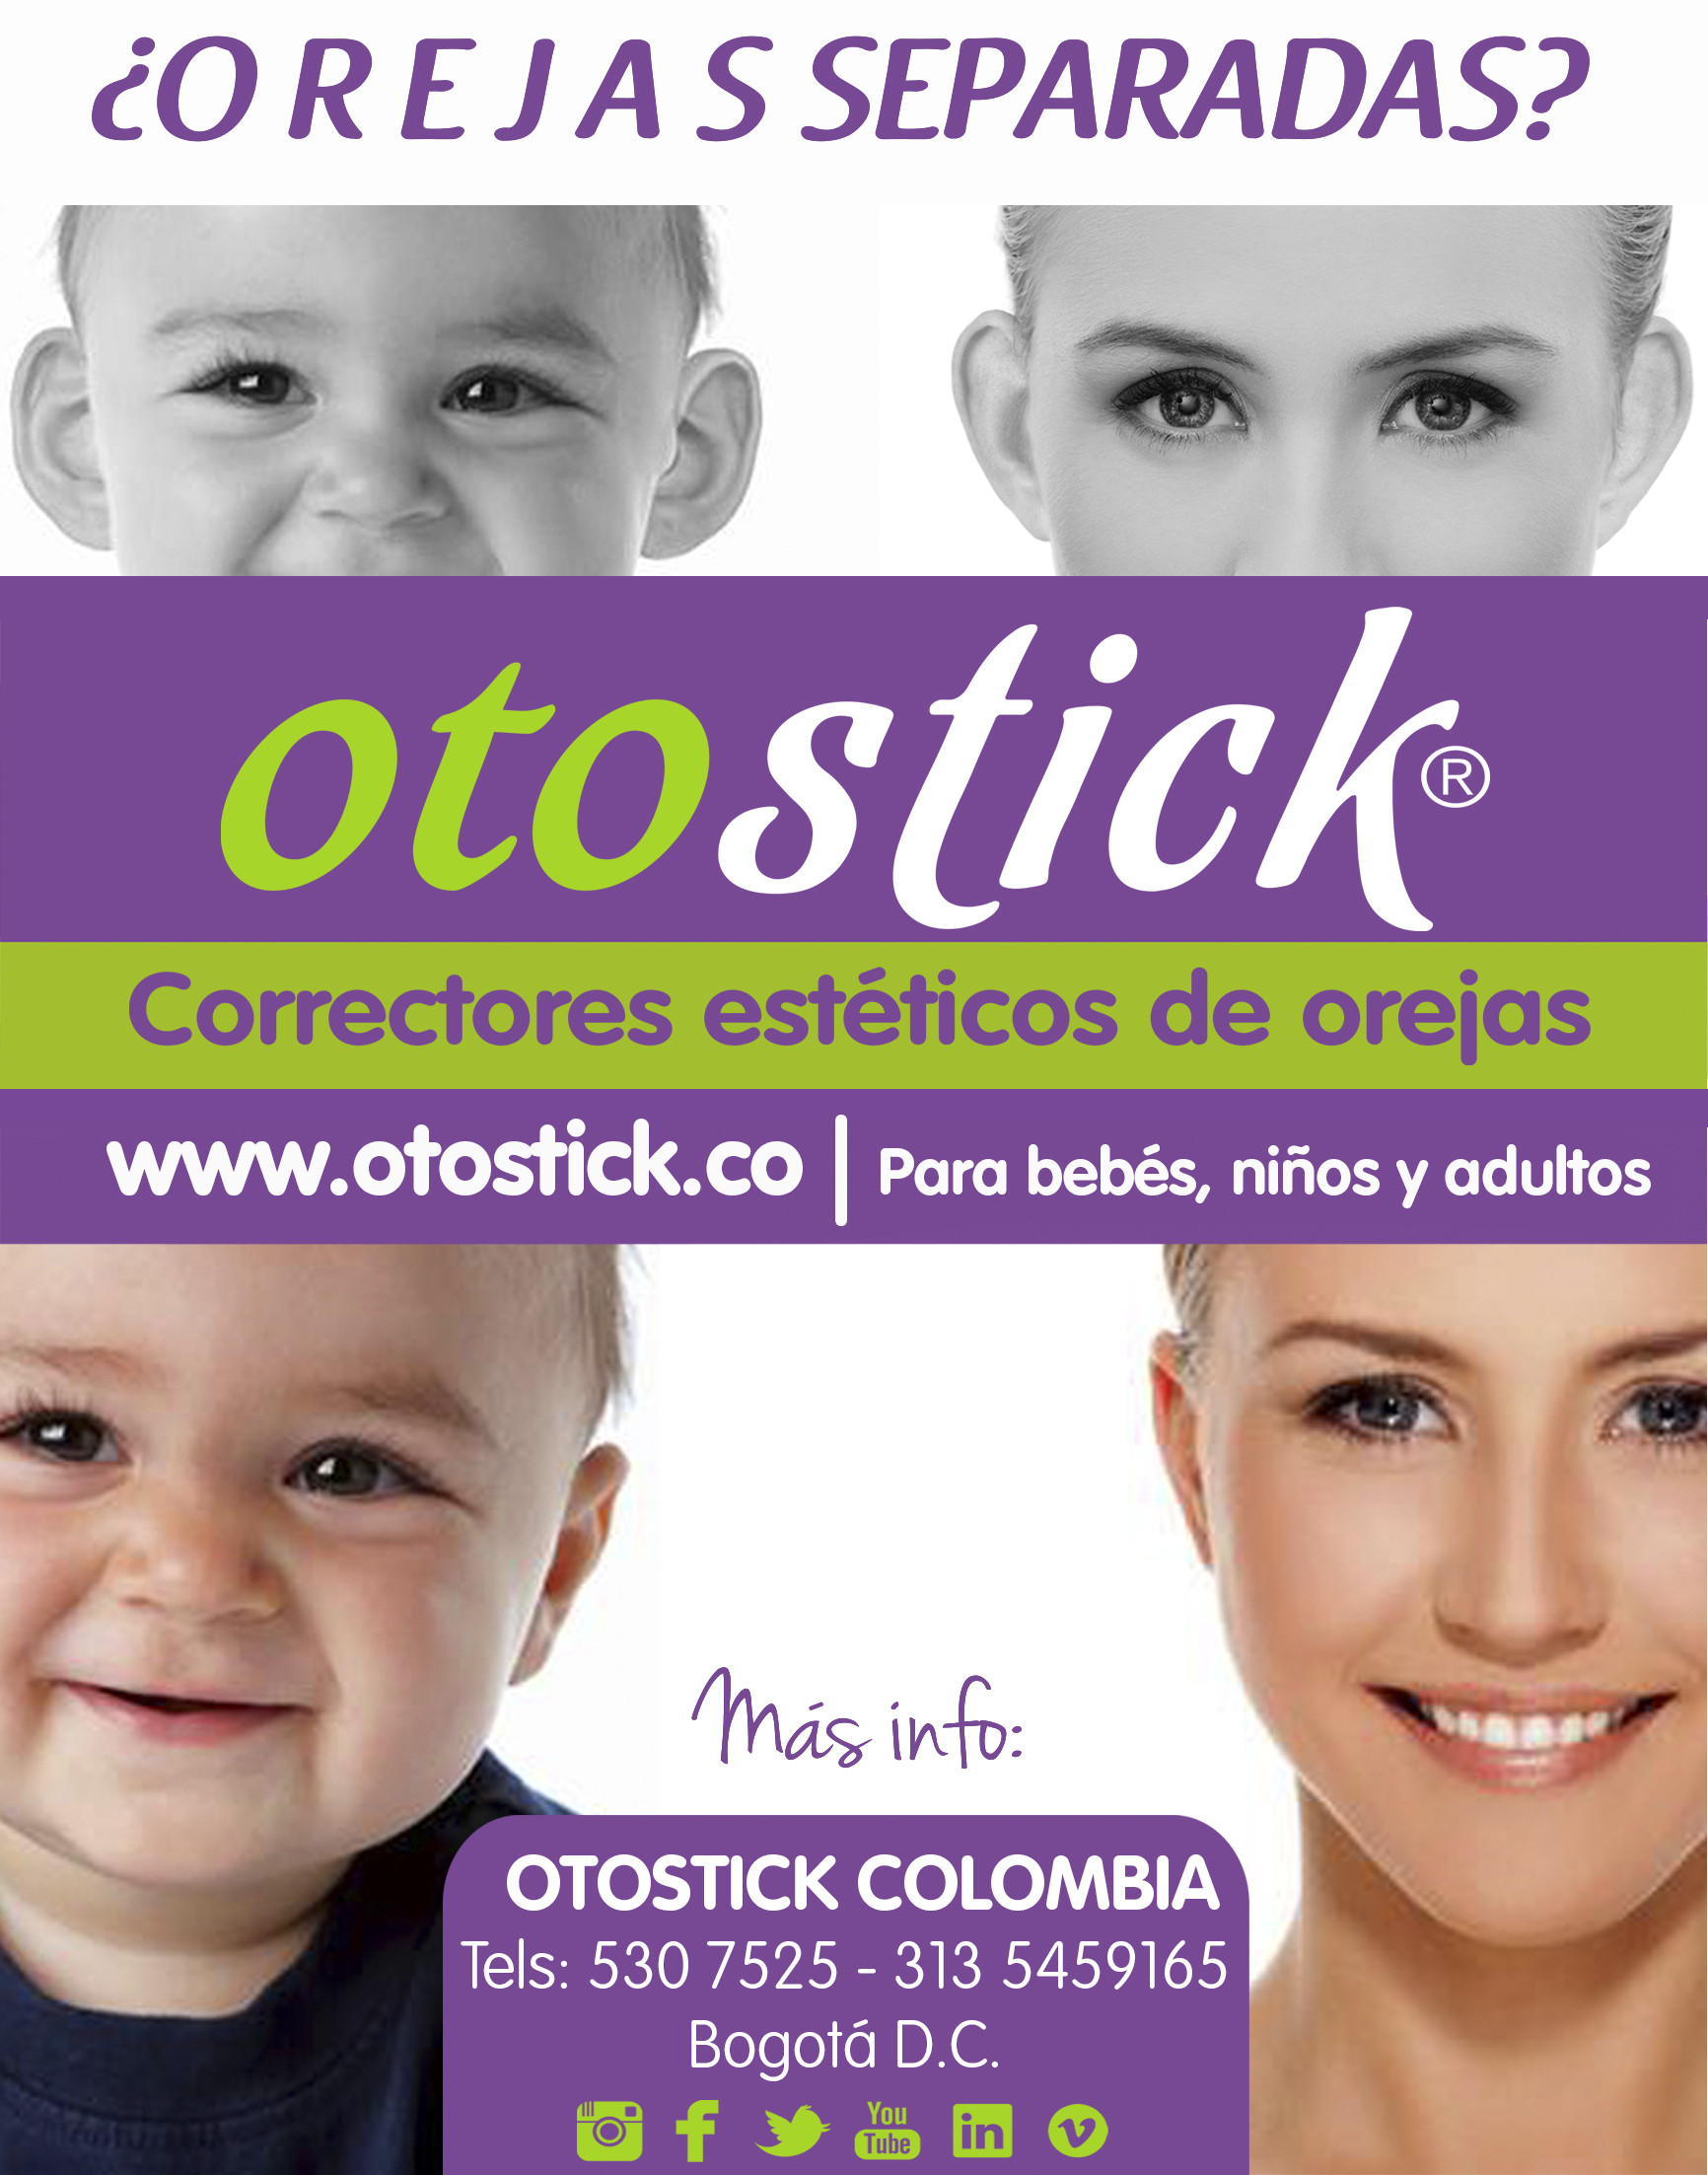 Otostick, Corrector estético para Orejas Separadas